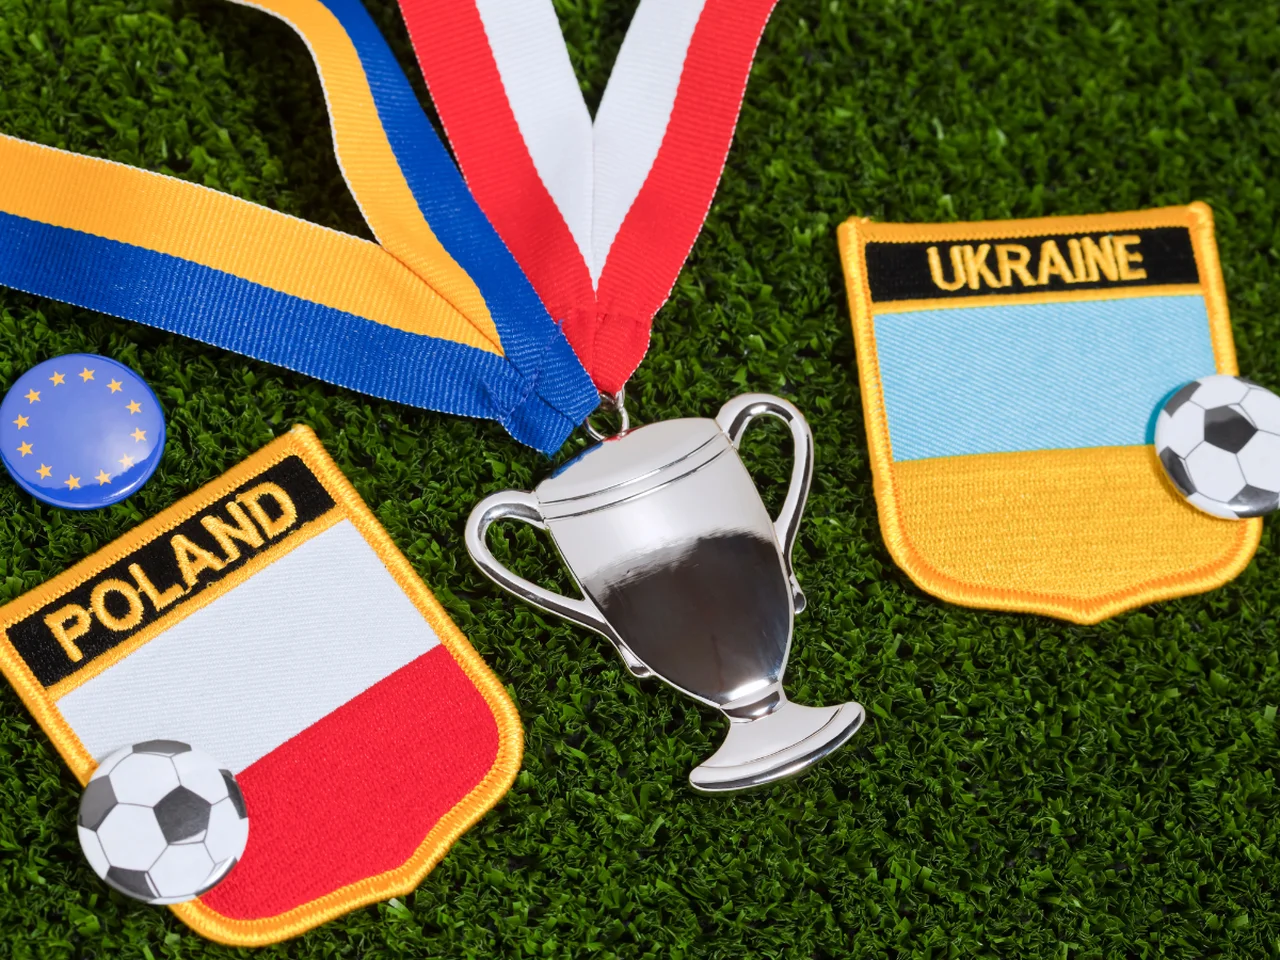 Mistrzostwa Europy w piłce nożnej ponownie w Polsce i Ukrainie?